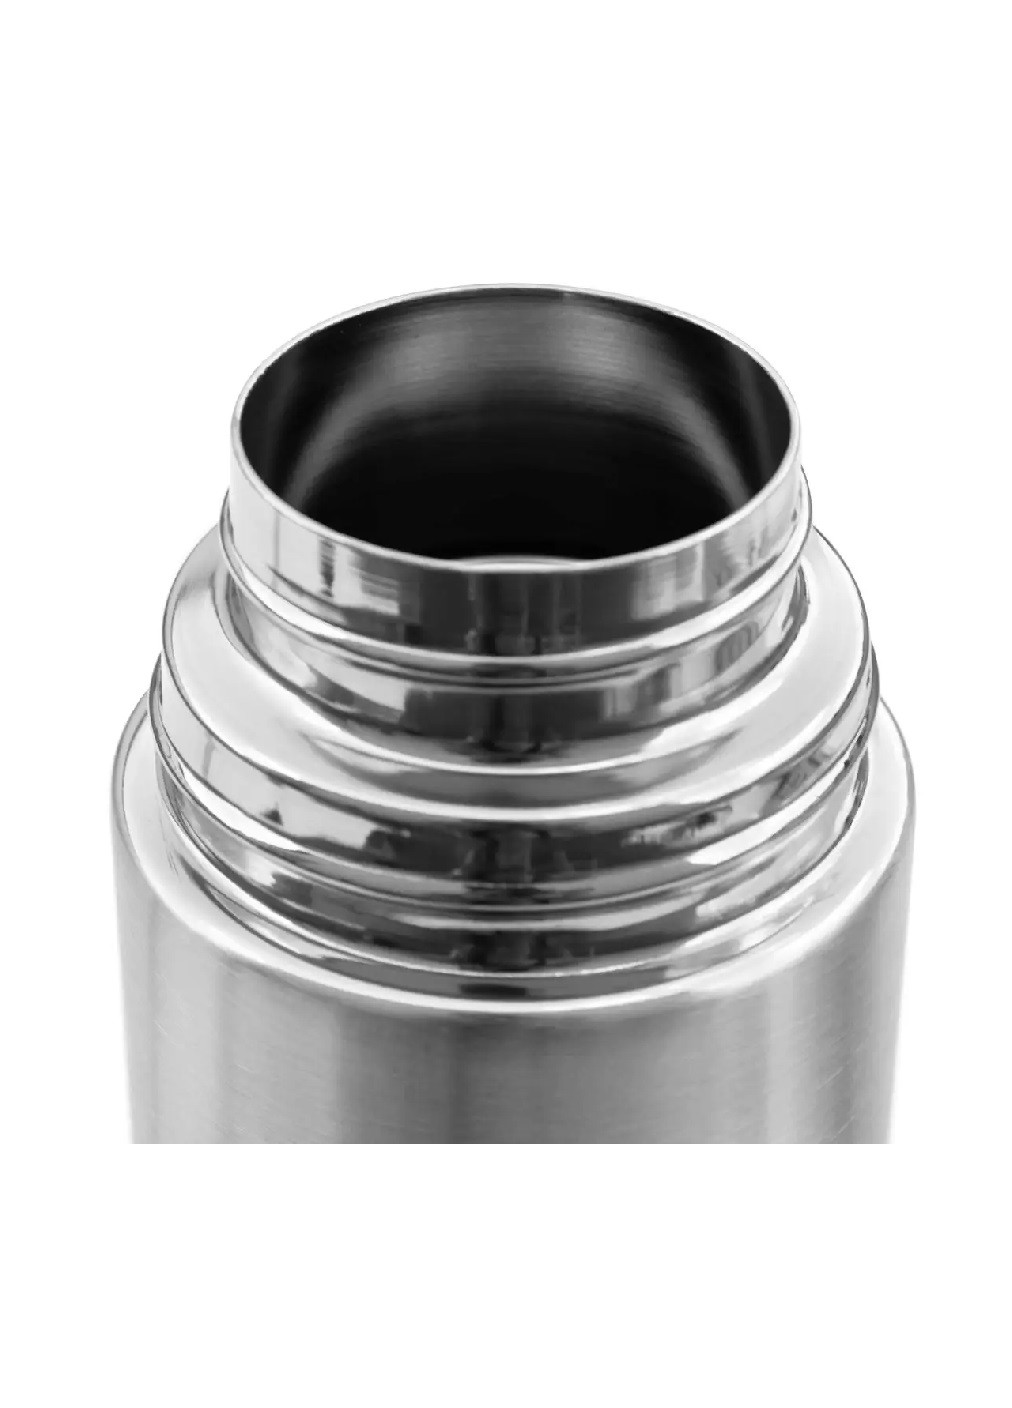 Термос питьевой компактный вместительный для кофе воды чая из нержавеющей стали с чехлом чашкой 1 л (475615-Prob) Серебристый Unbranded (269340970)